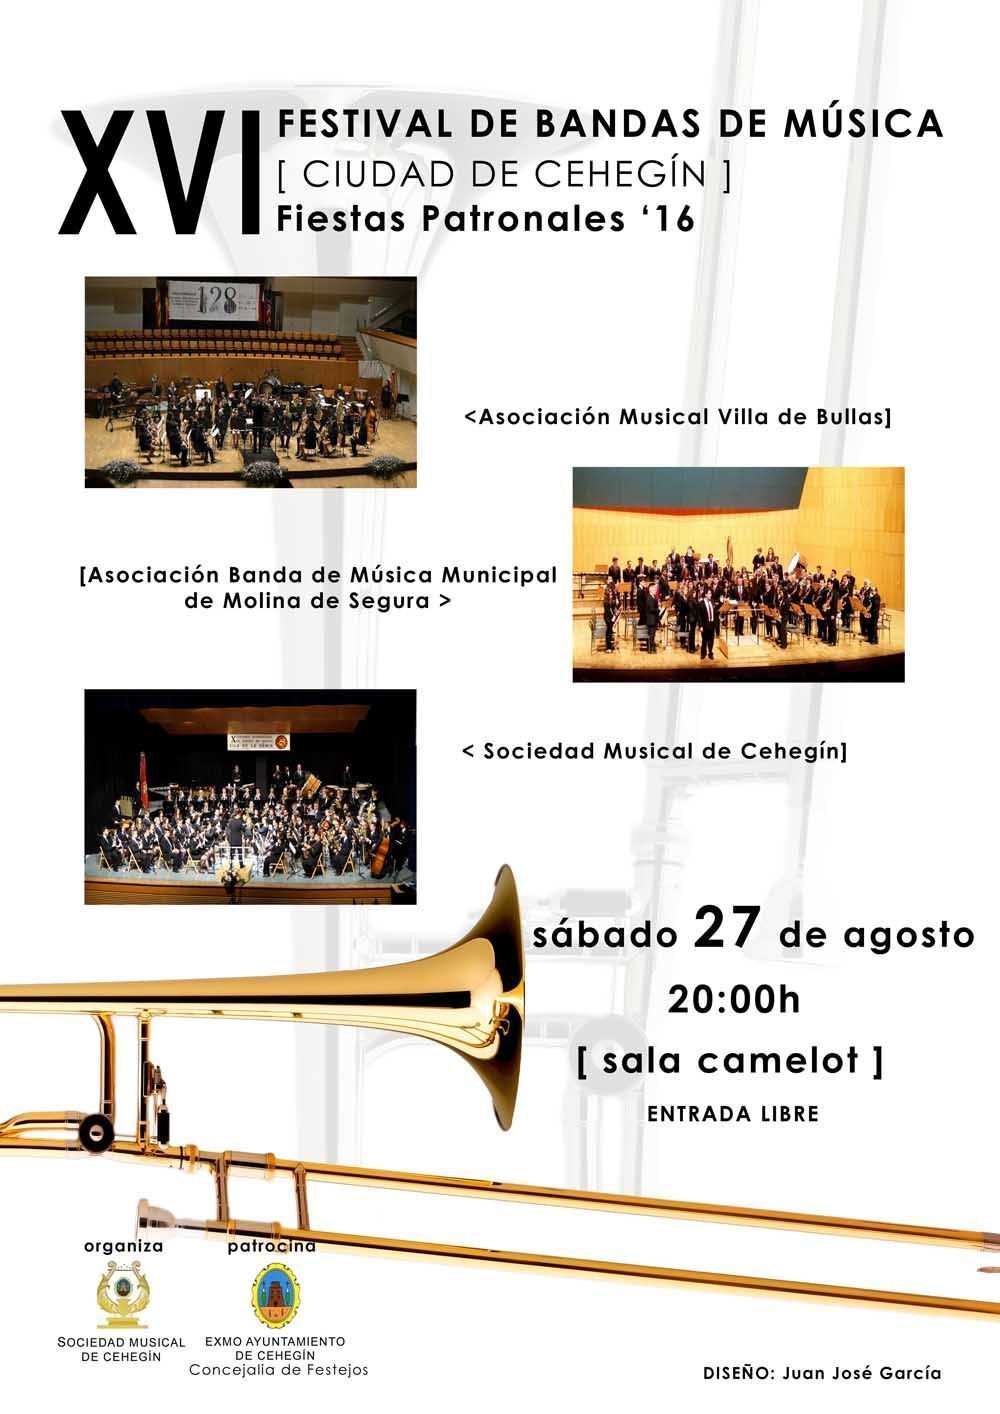 El XVI Festival de Bandas de Música, “Ciudad de Cehegín”, se celebra el próximo sábado, 27 de agosto, con la participación de Bullas y Molina de Segura